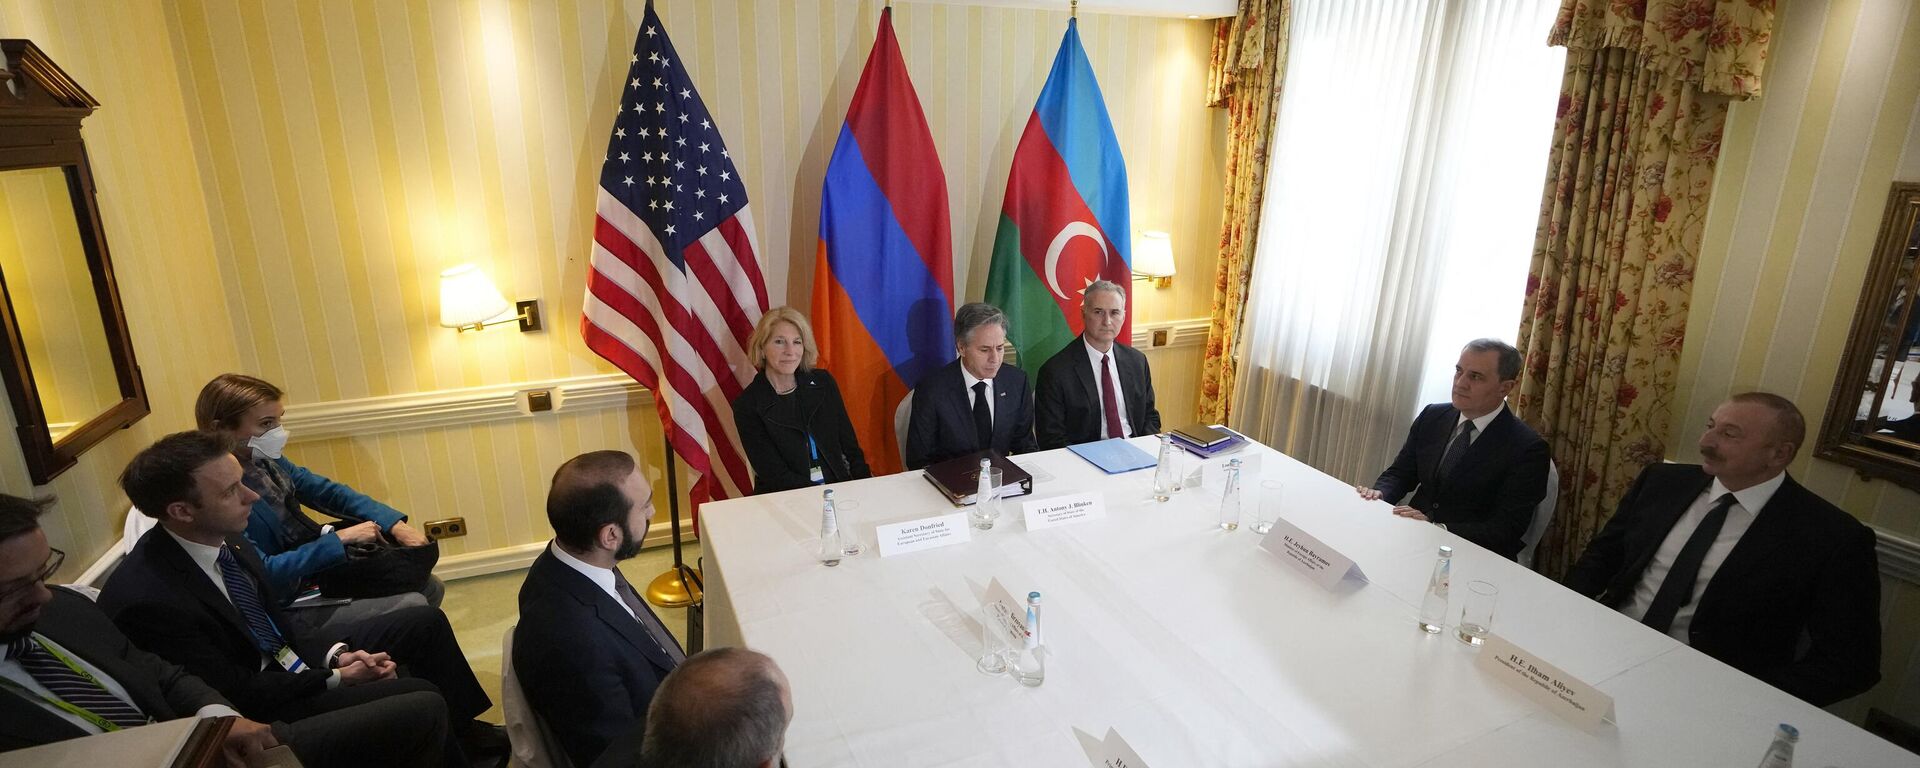 El Secretario de Estado de EEUU, Antony Blinken, asiste a una reunión con el presidente de Azerbaiyán y el primer ministro de Armenia (ambos sin ser vistos) en la Conferencia de Seguridad de Múnich - Sputnik Mundo, 1920, 06.03.2023